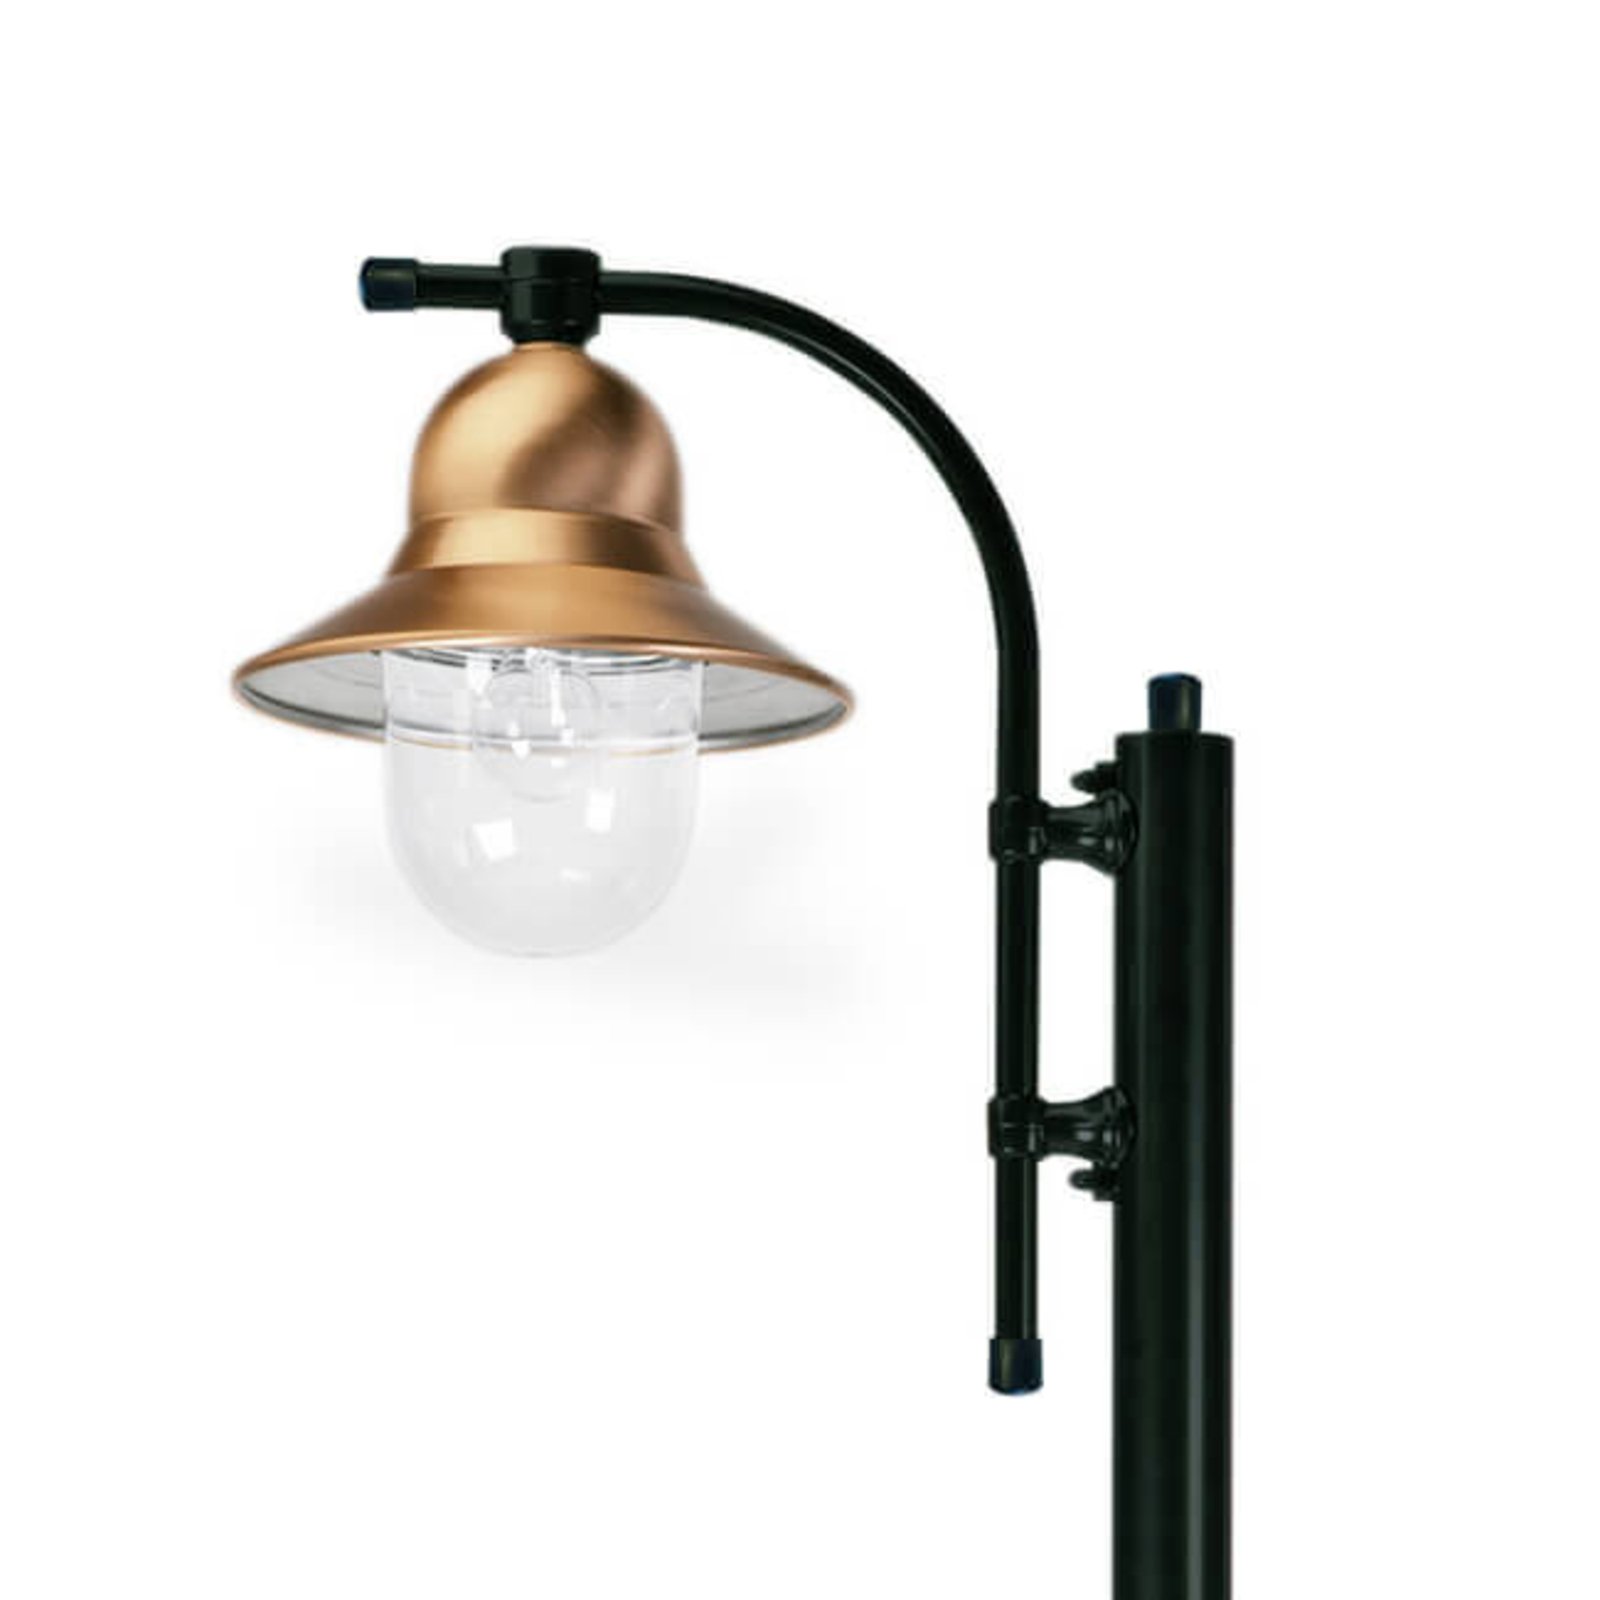 Jarbolno svjetlo s 1 žaruljom Toscane 240 cm, crno